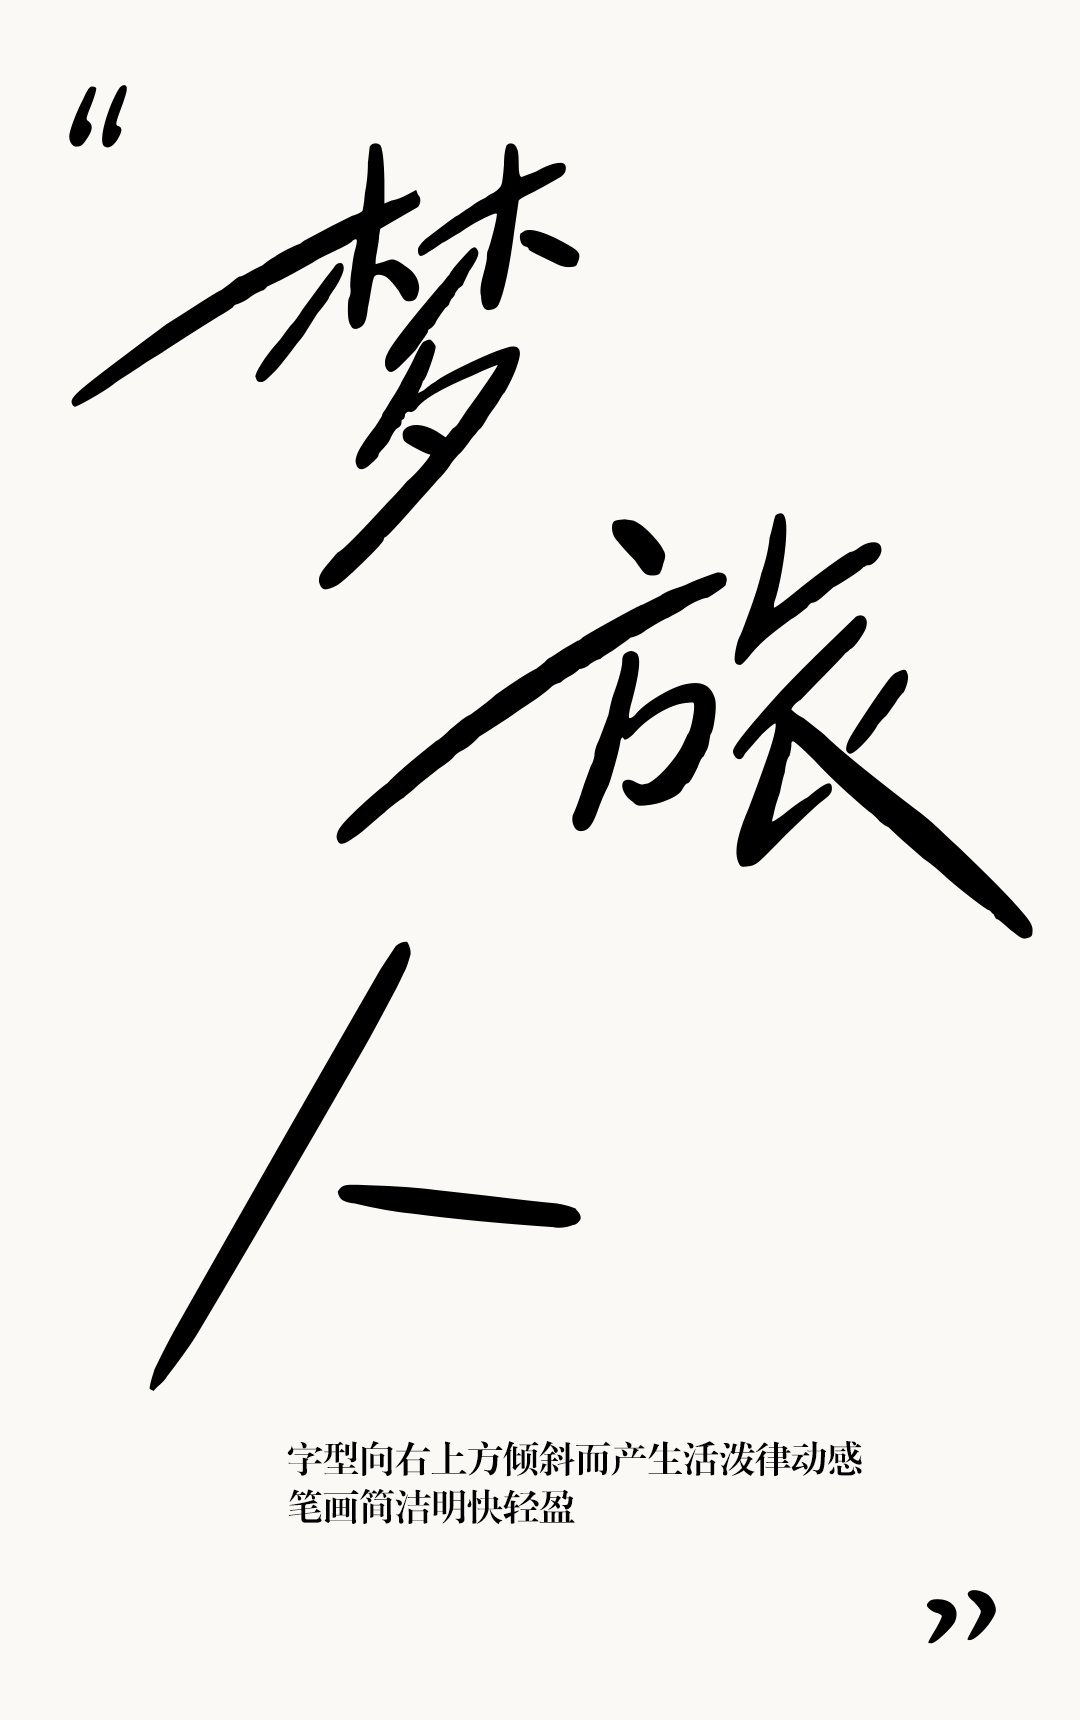 清新文艺手写字体—小豆岛2款字体上线！